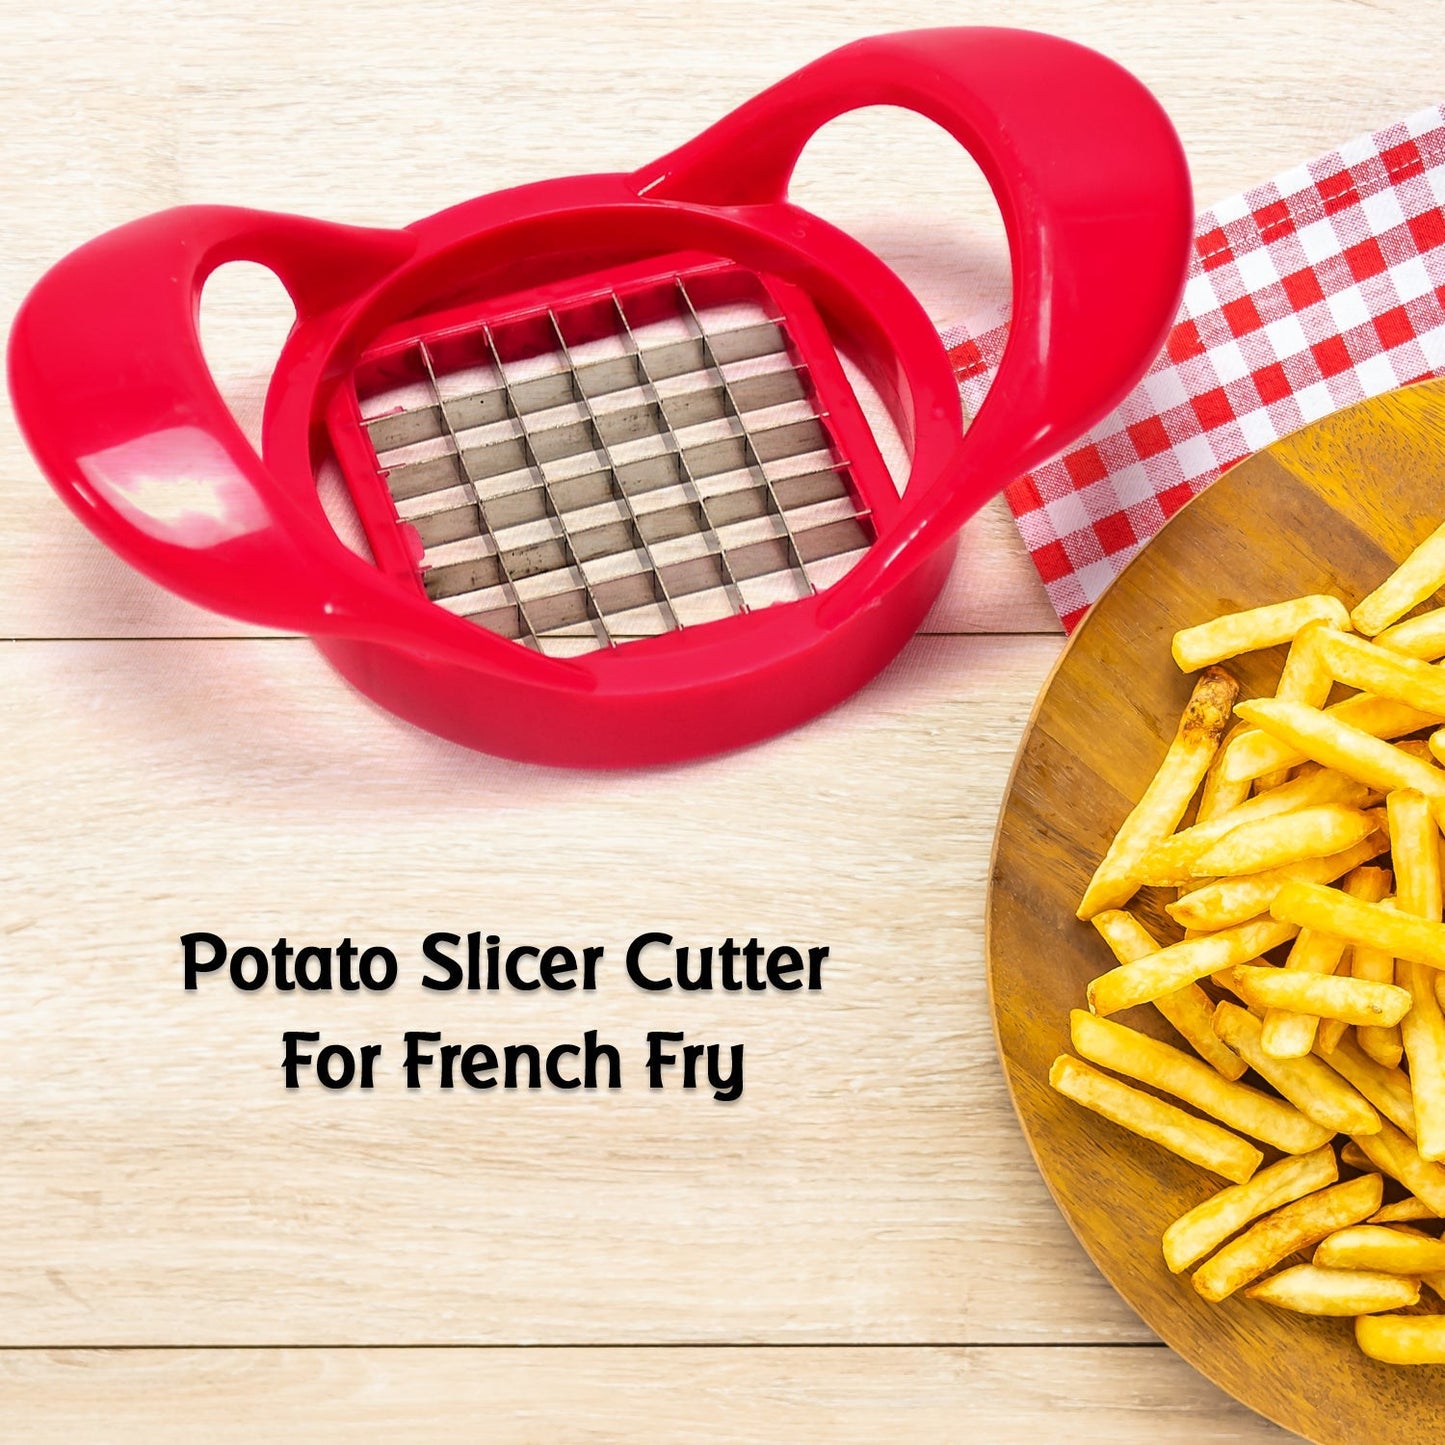 2311 Potato Cutter, Fries Cutter Sweet Potato Fries Cutter Potatoes Cutter or Potato Slicer Cutter For French Fry. DeoDap